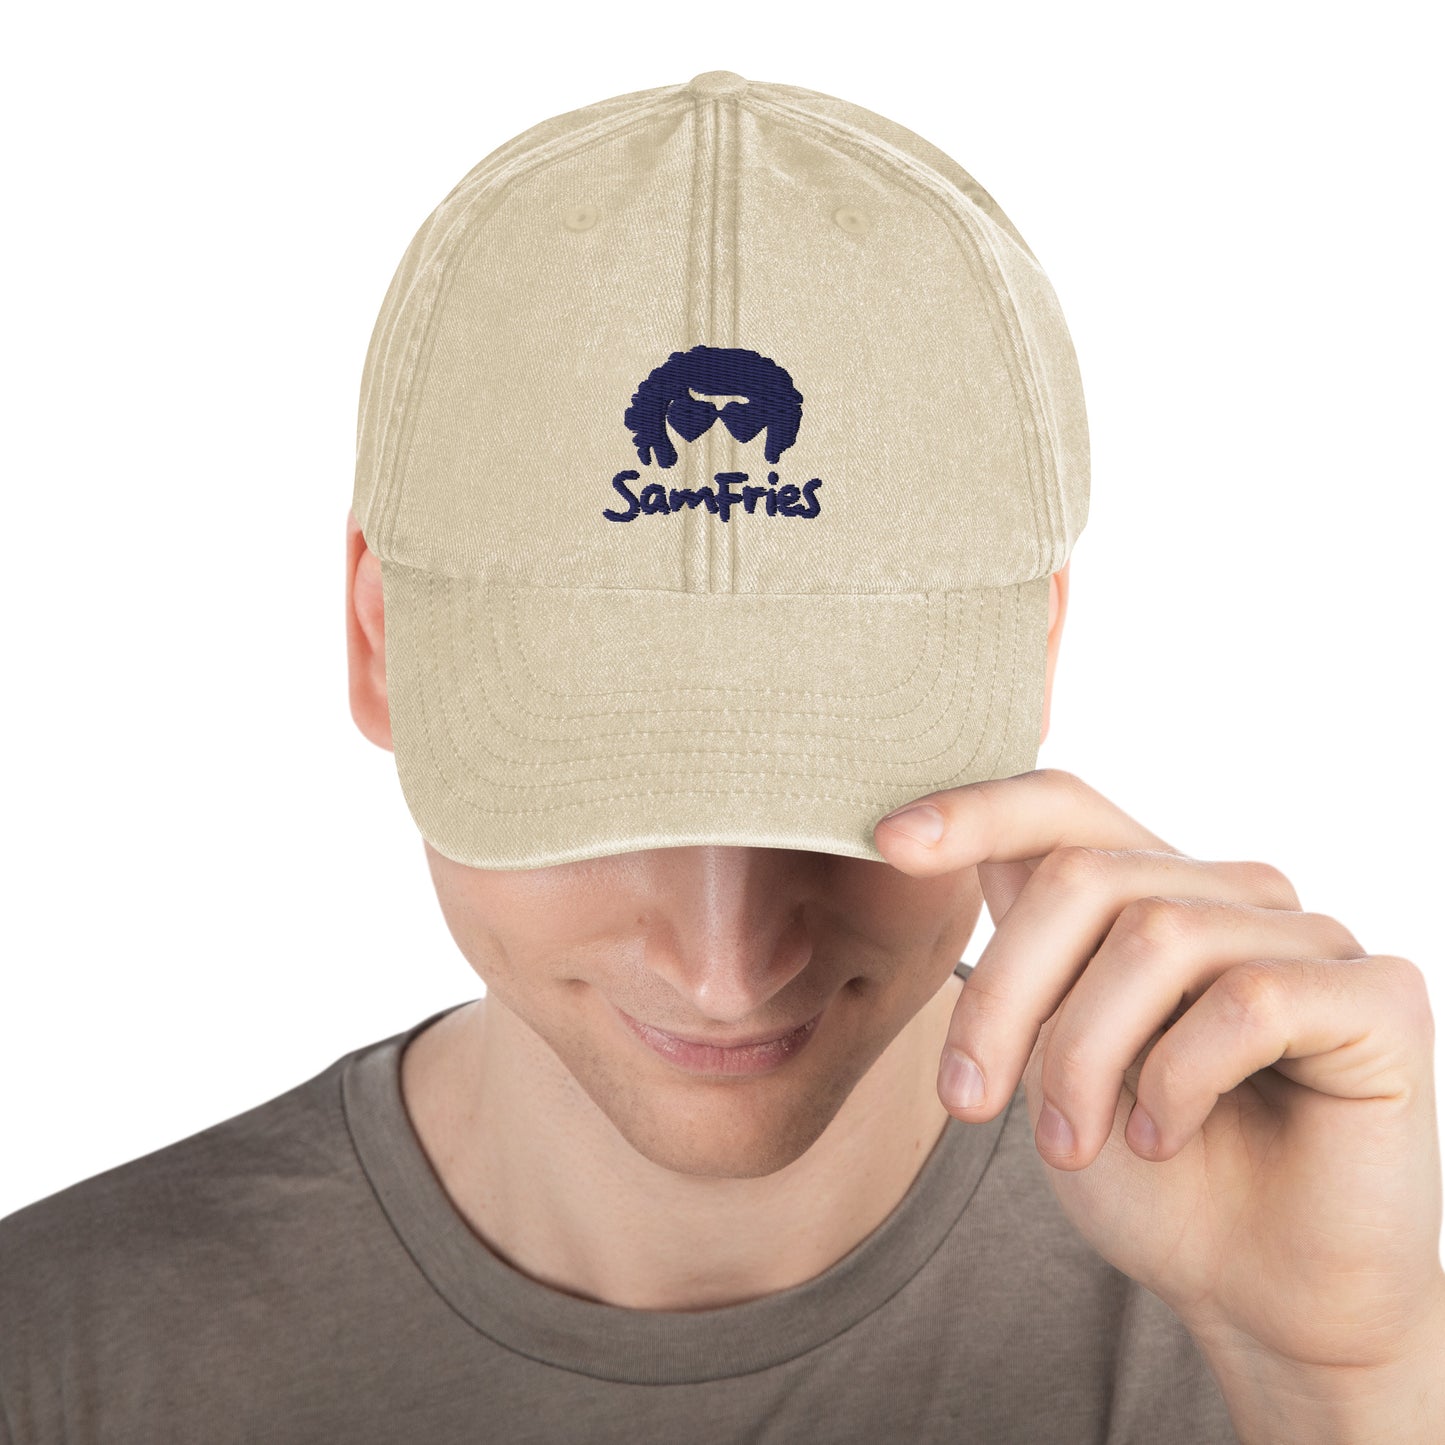 SAMFRIES Vintage Cap, 100% cotton